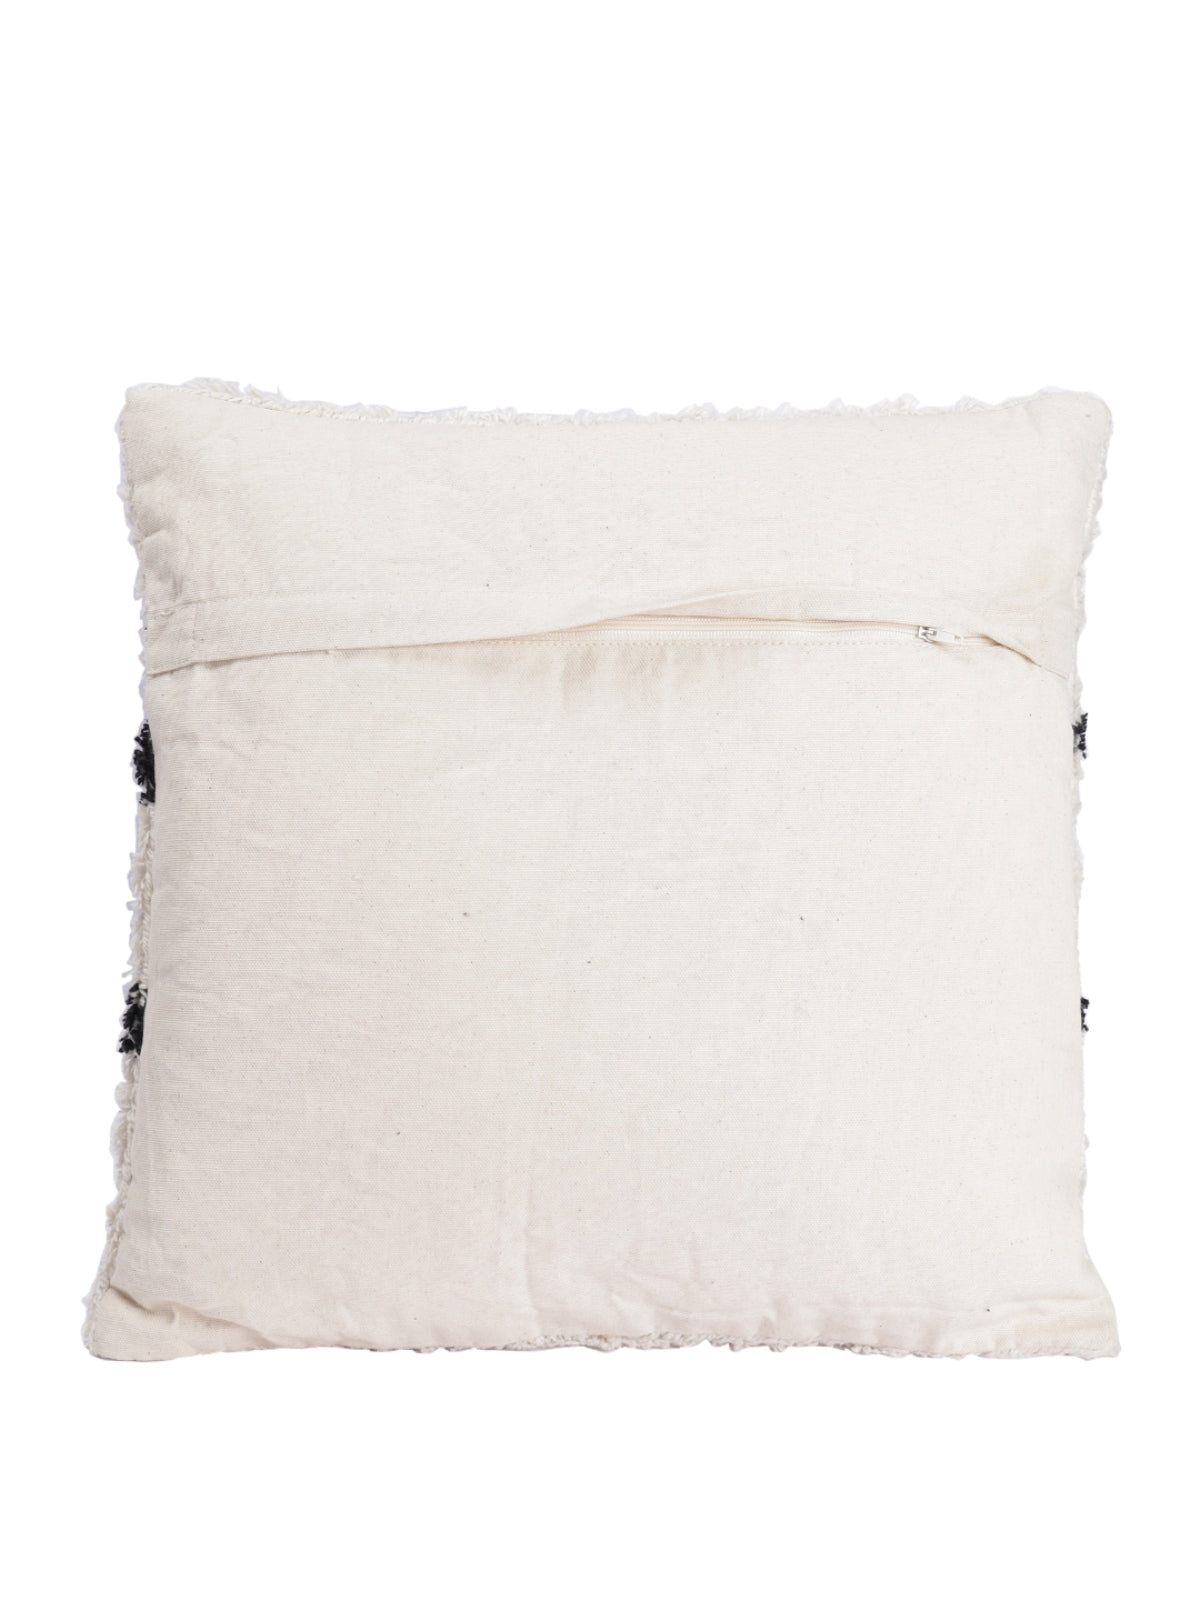 ROMEE White Geometric Printed Cushion Covers Set of 2